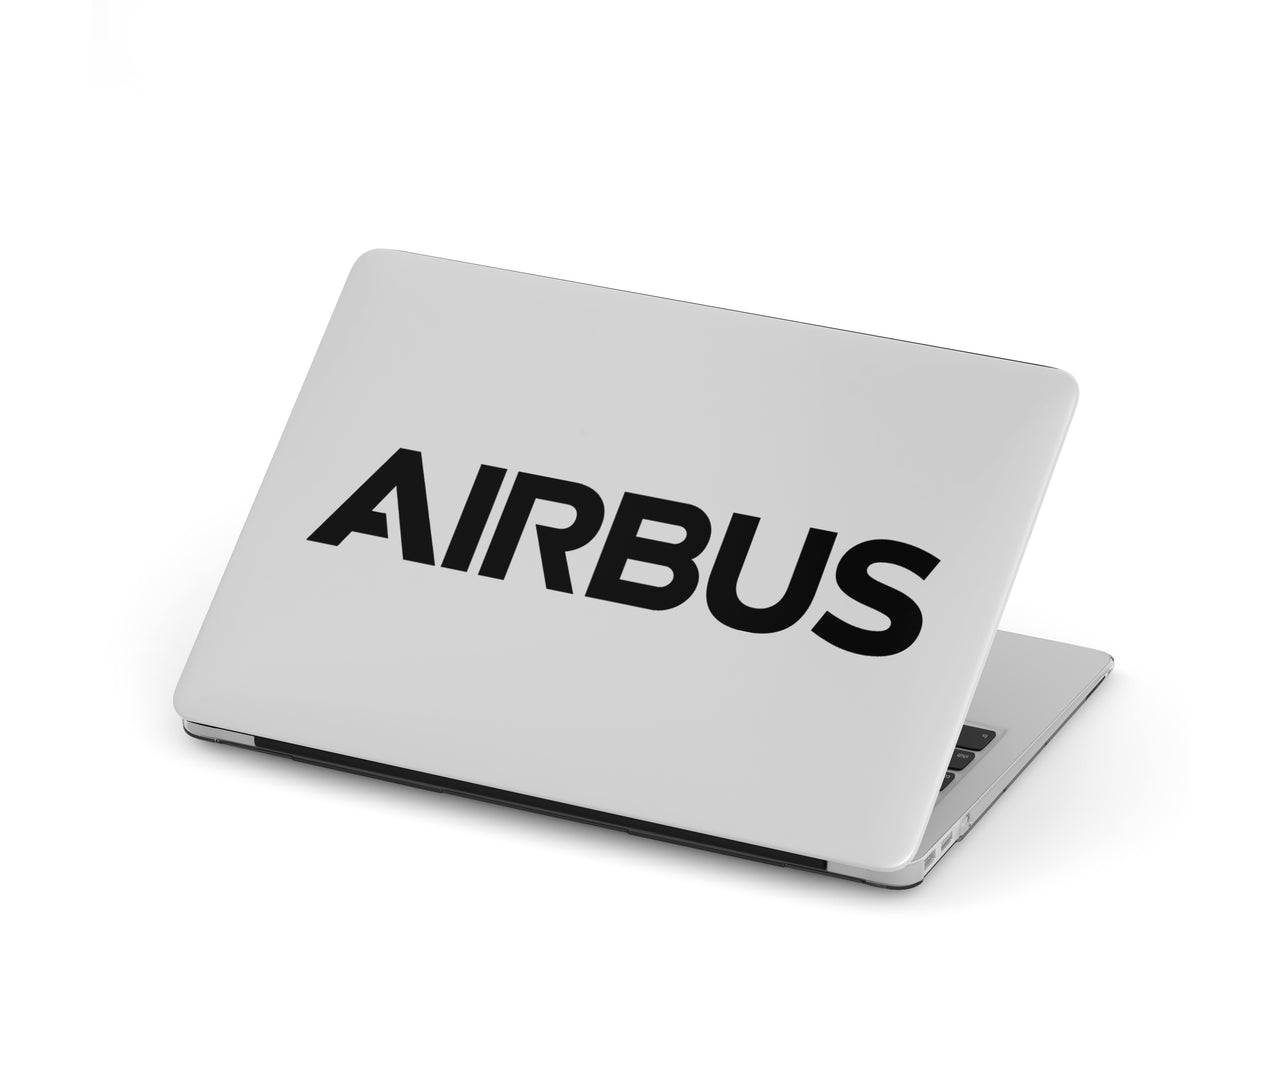 Airbus & Text Designed Macbook Cases